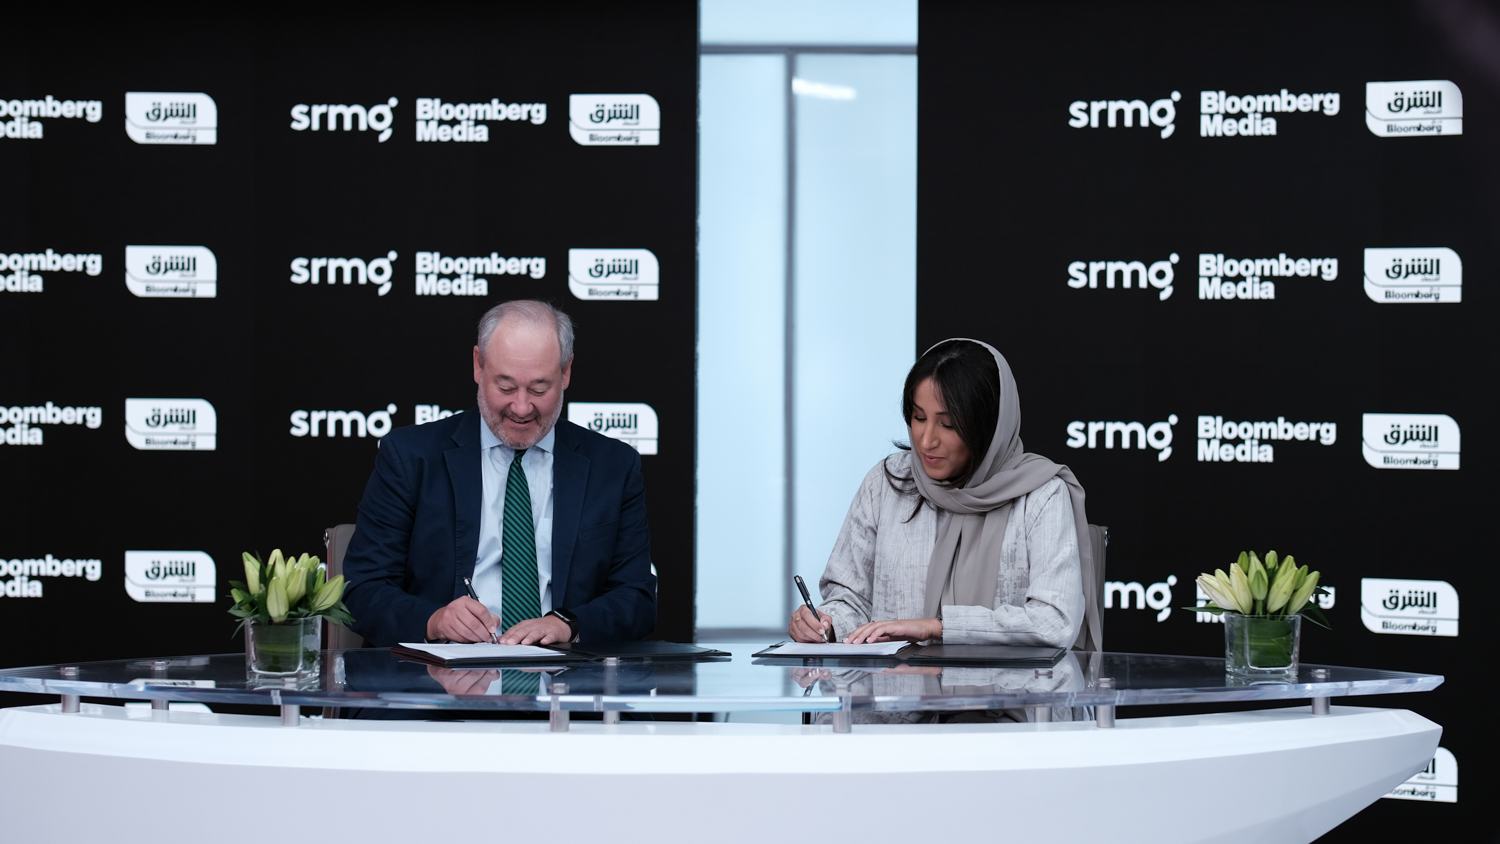 بالتعاون مع بلومبرغ الإعلامية ، تطلق المجموعة السعودية للأبحاث والإعلام (SRMG) منصة "الشرق كويك تيك"، كما ستقيم منتدى "بلومبرغ إنفست" في الرياض